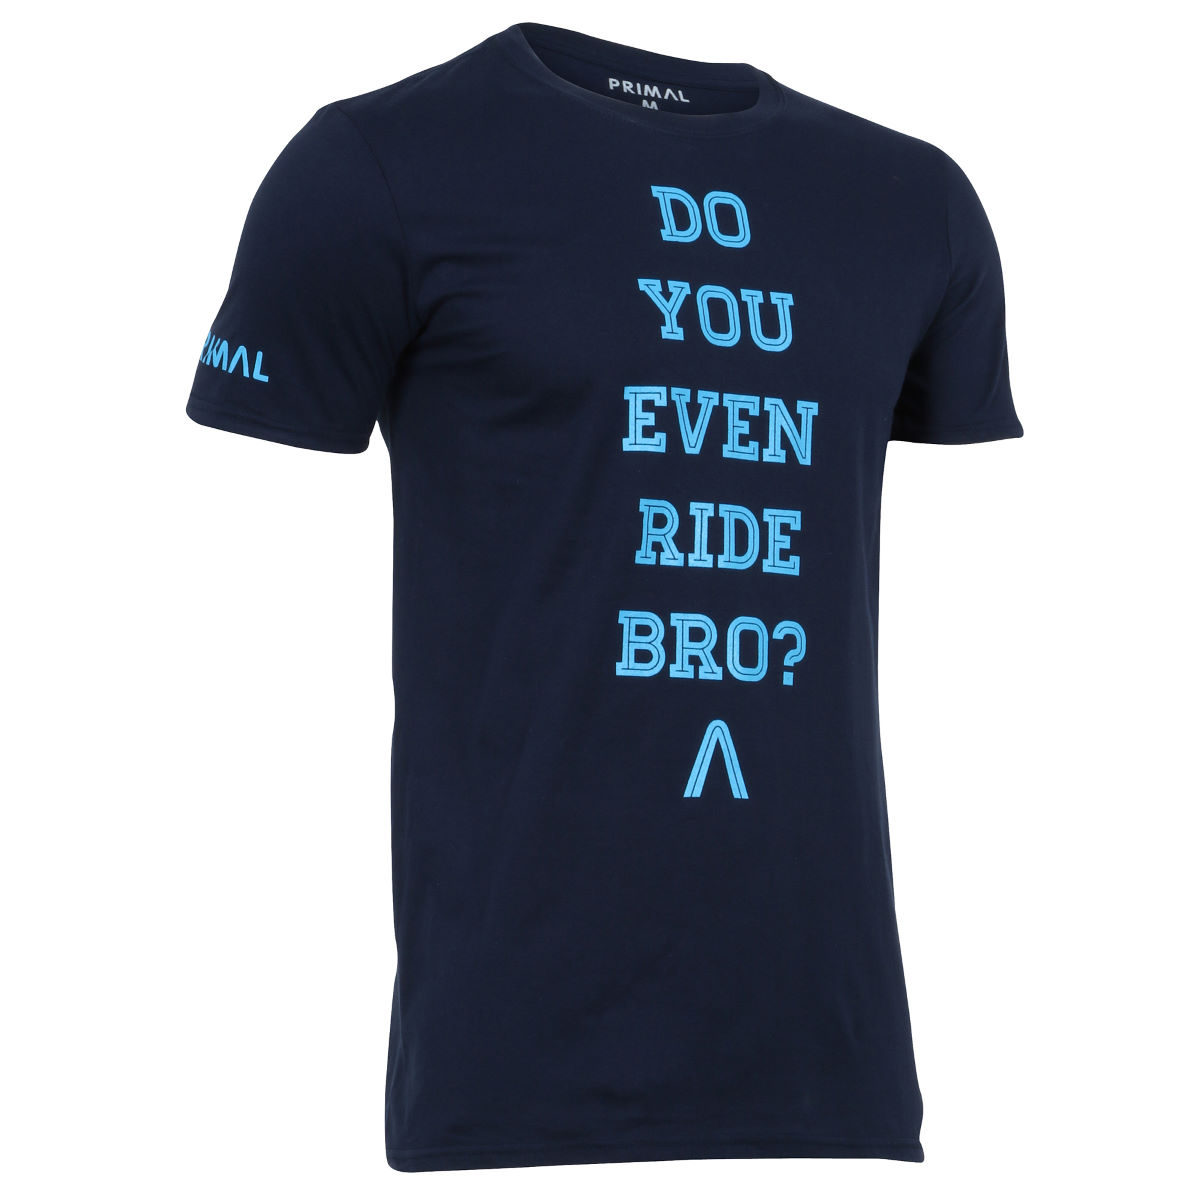 Camiseta Primal Ride Bro? - Camisetas